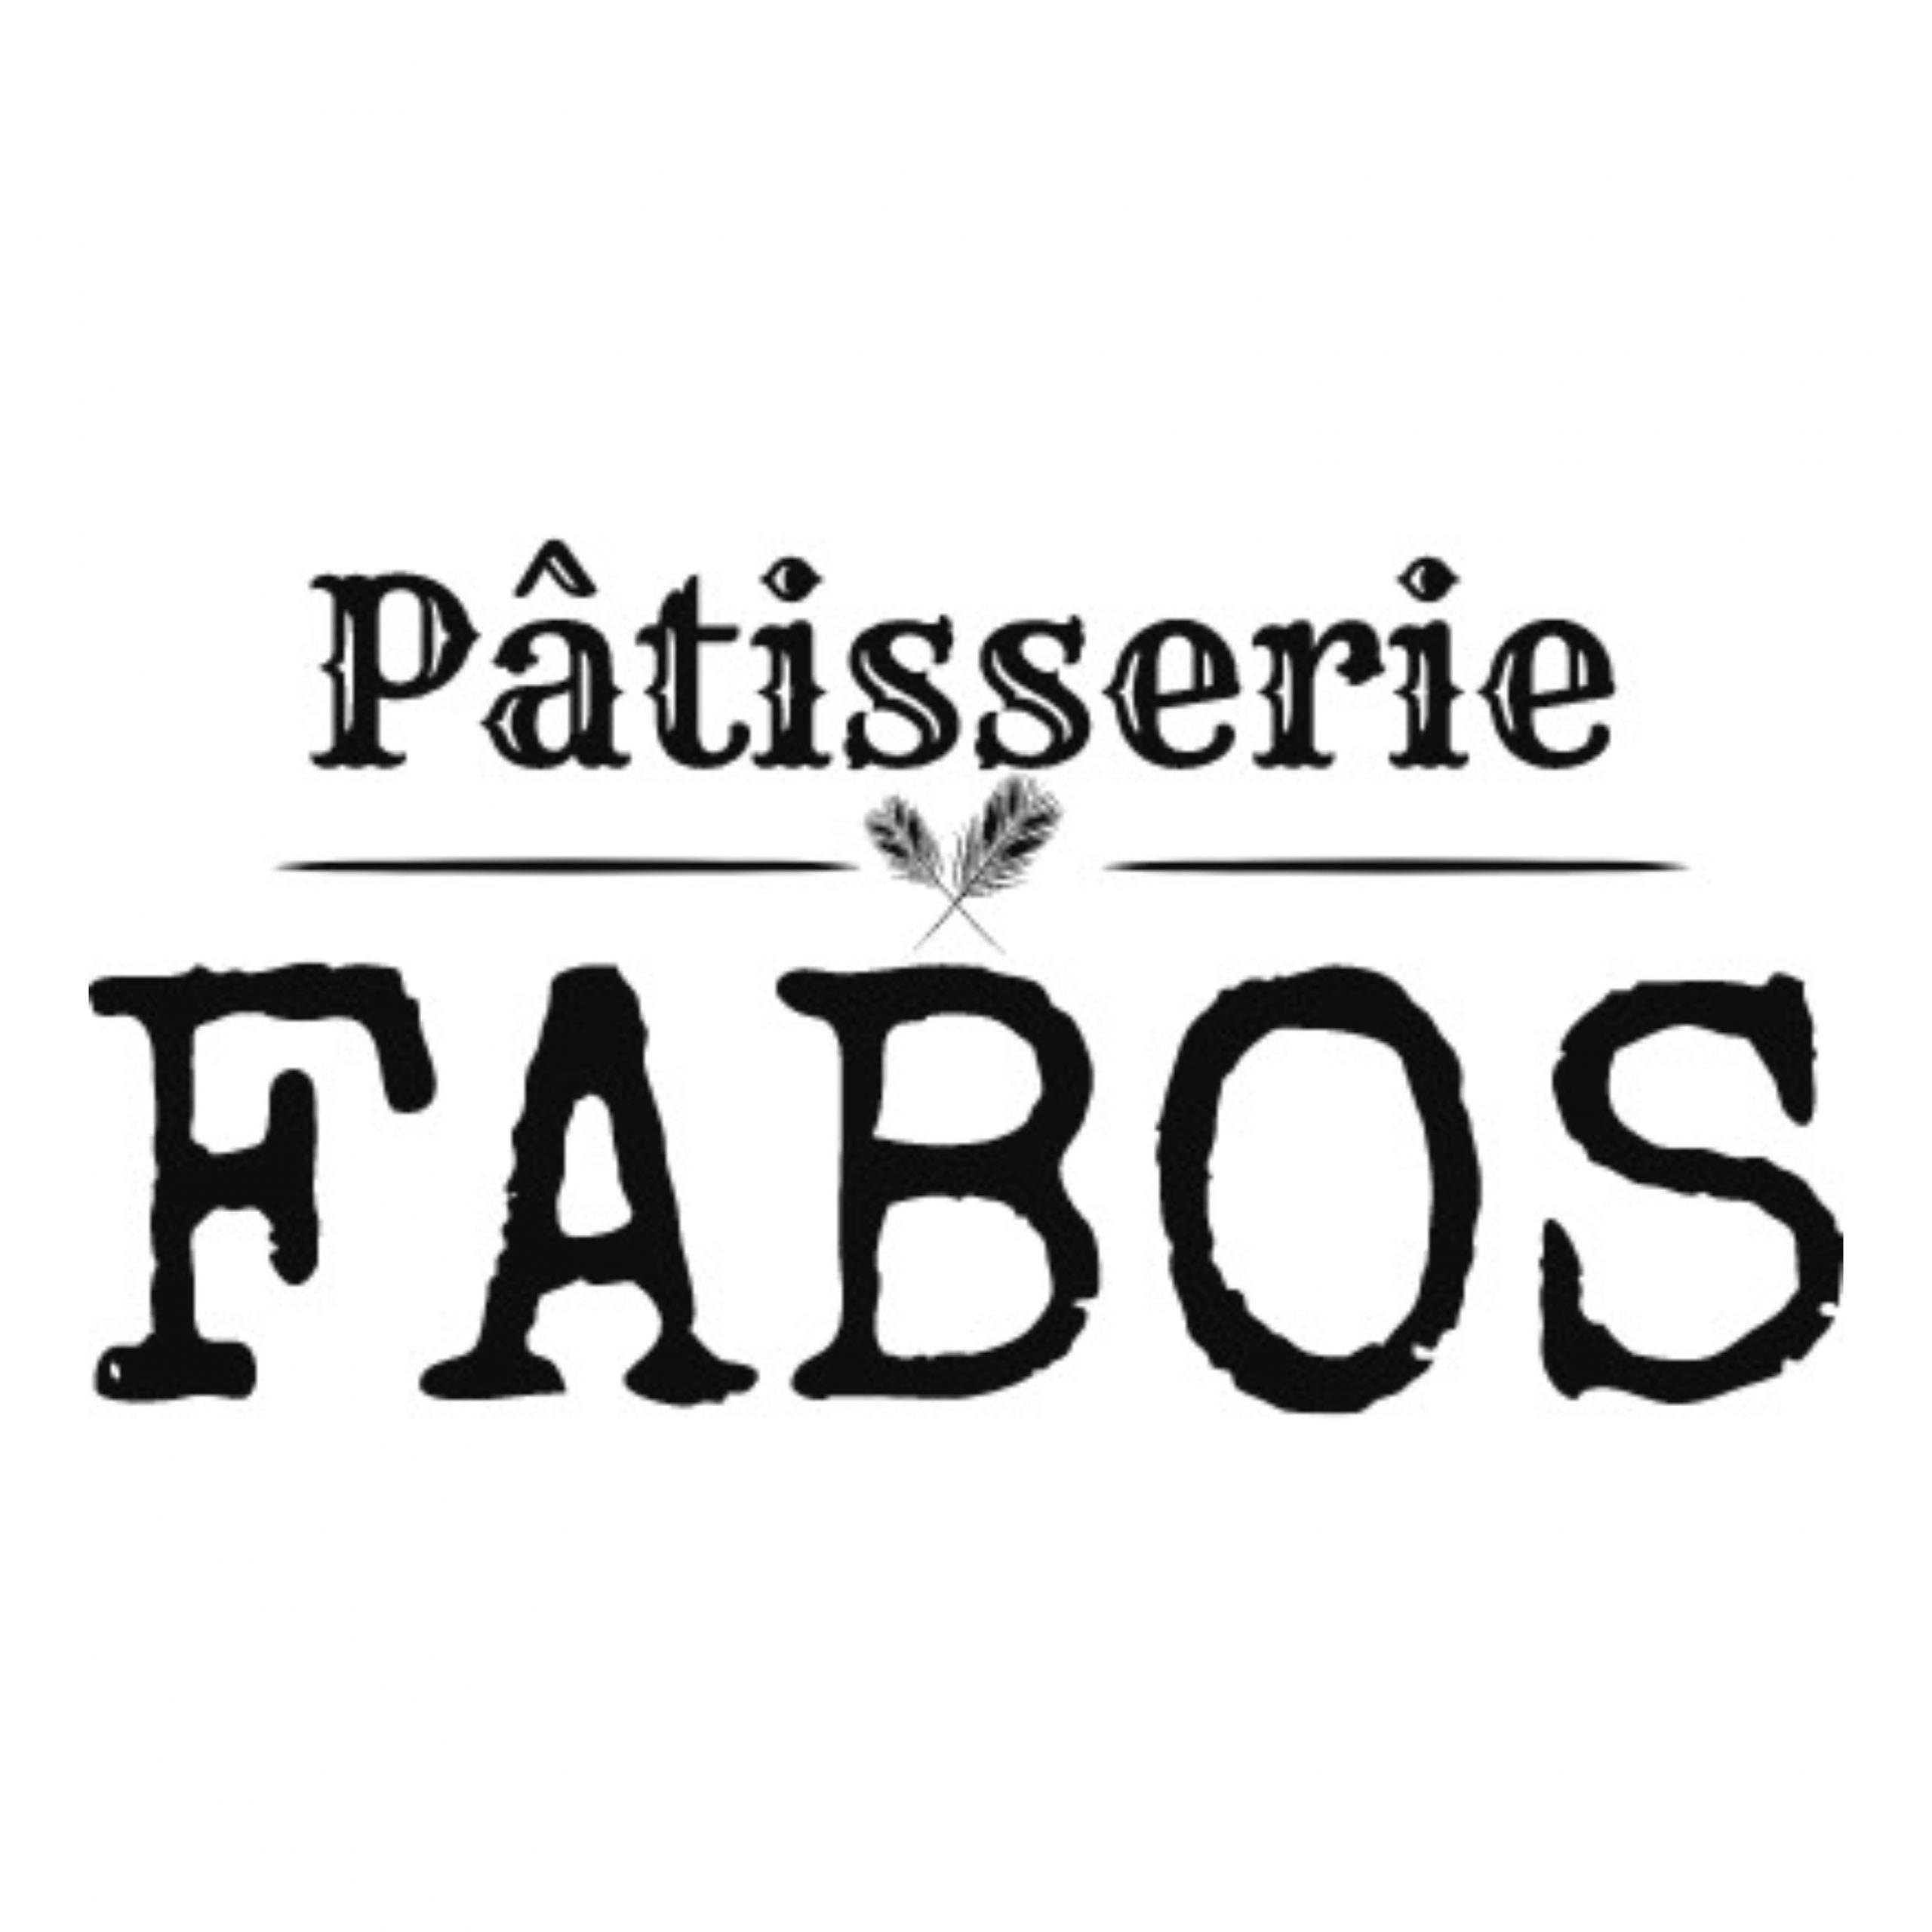 Pâtisserie  FABOS